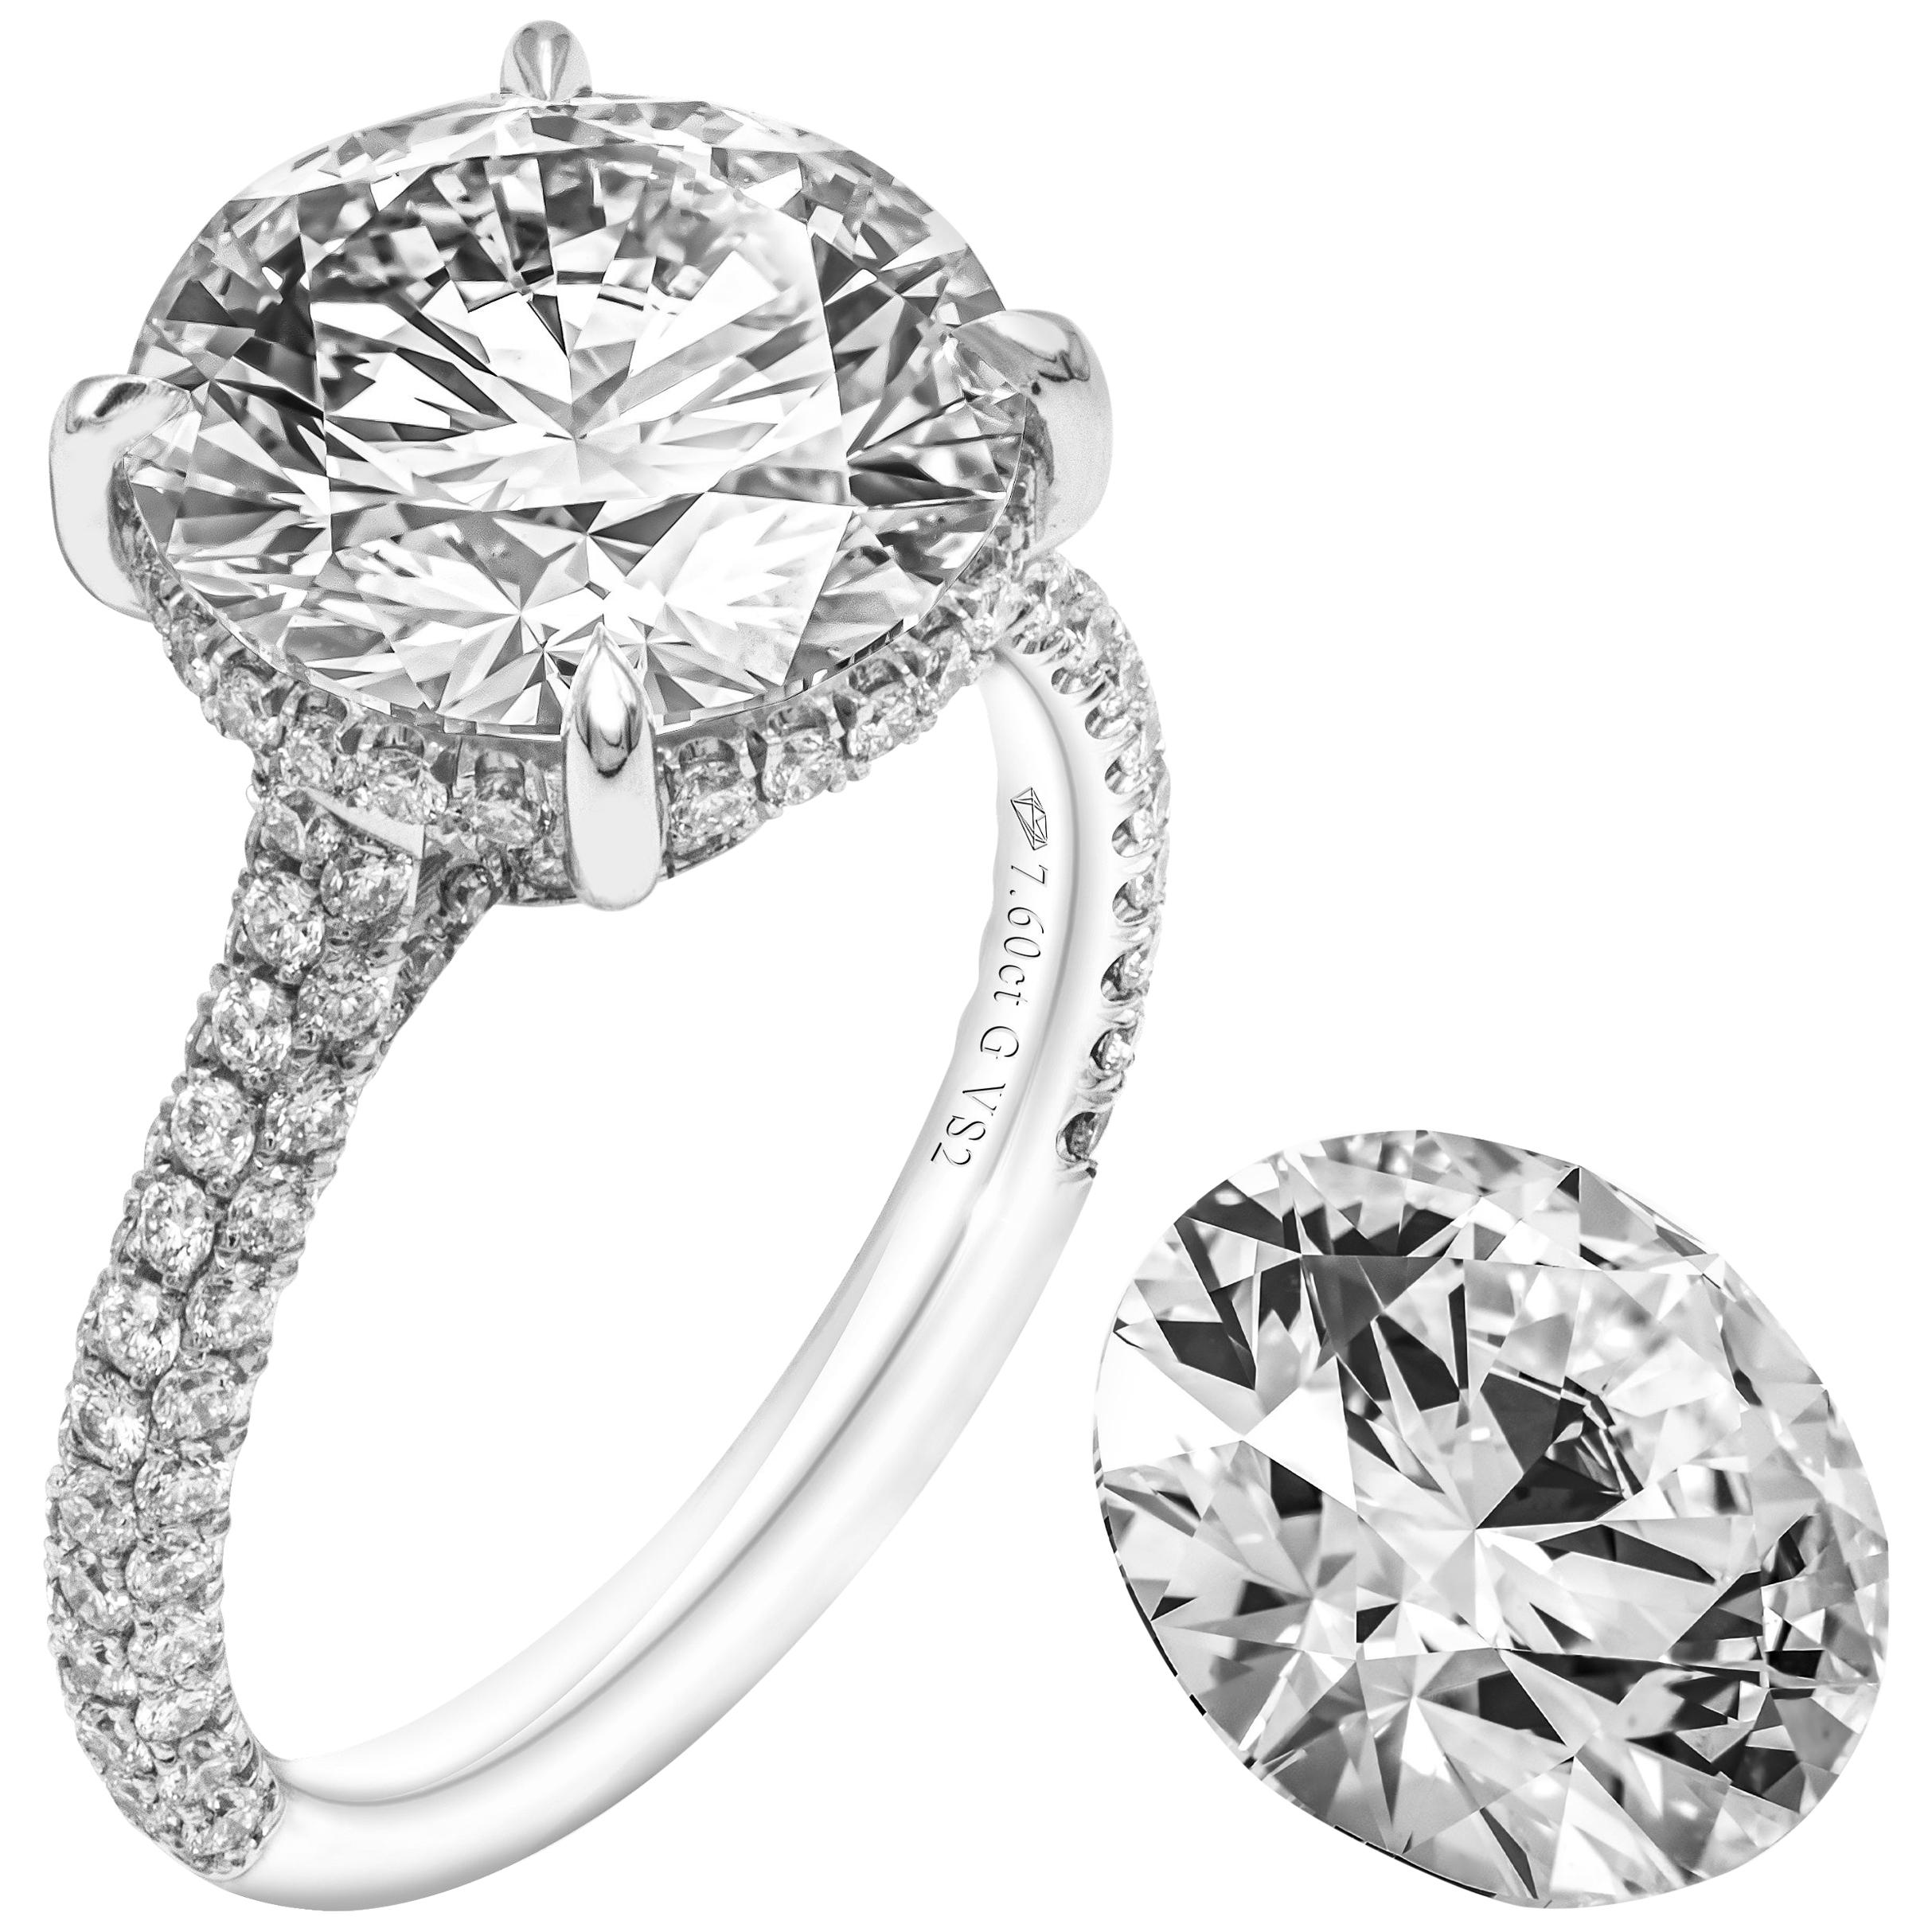 GIA Certified 7.60 Carat Round Diamond Engagement Ring